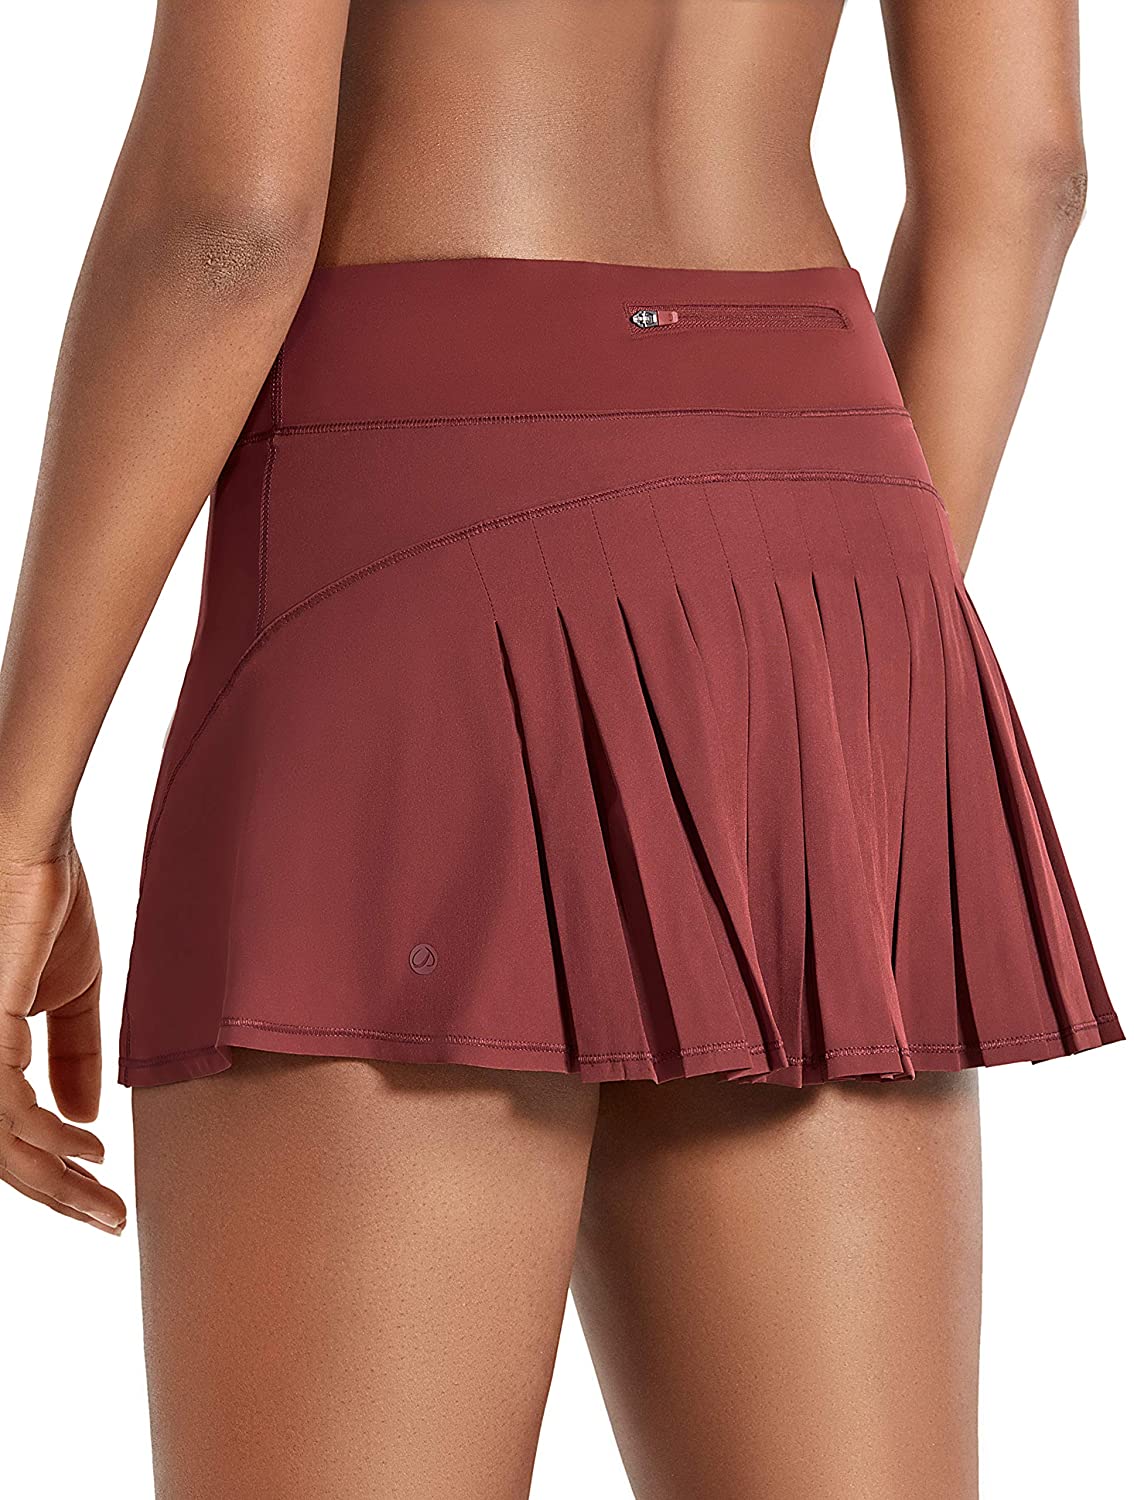  CRZ YOGA: Shorts & Skirts